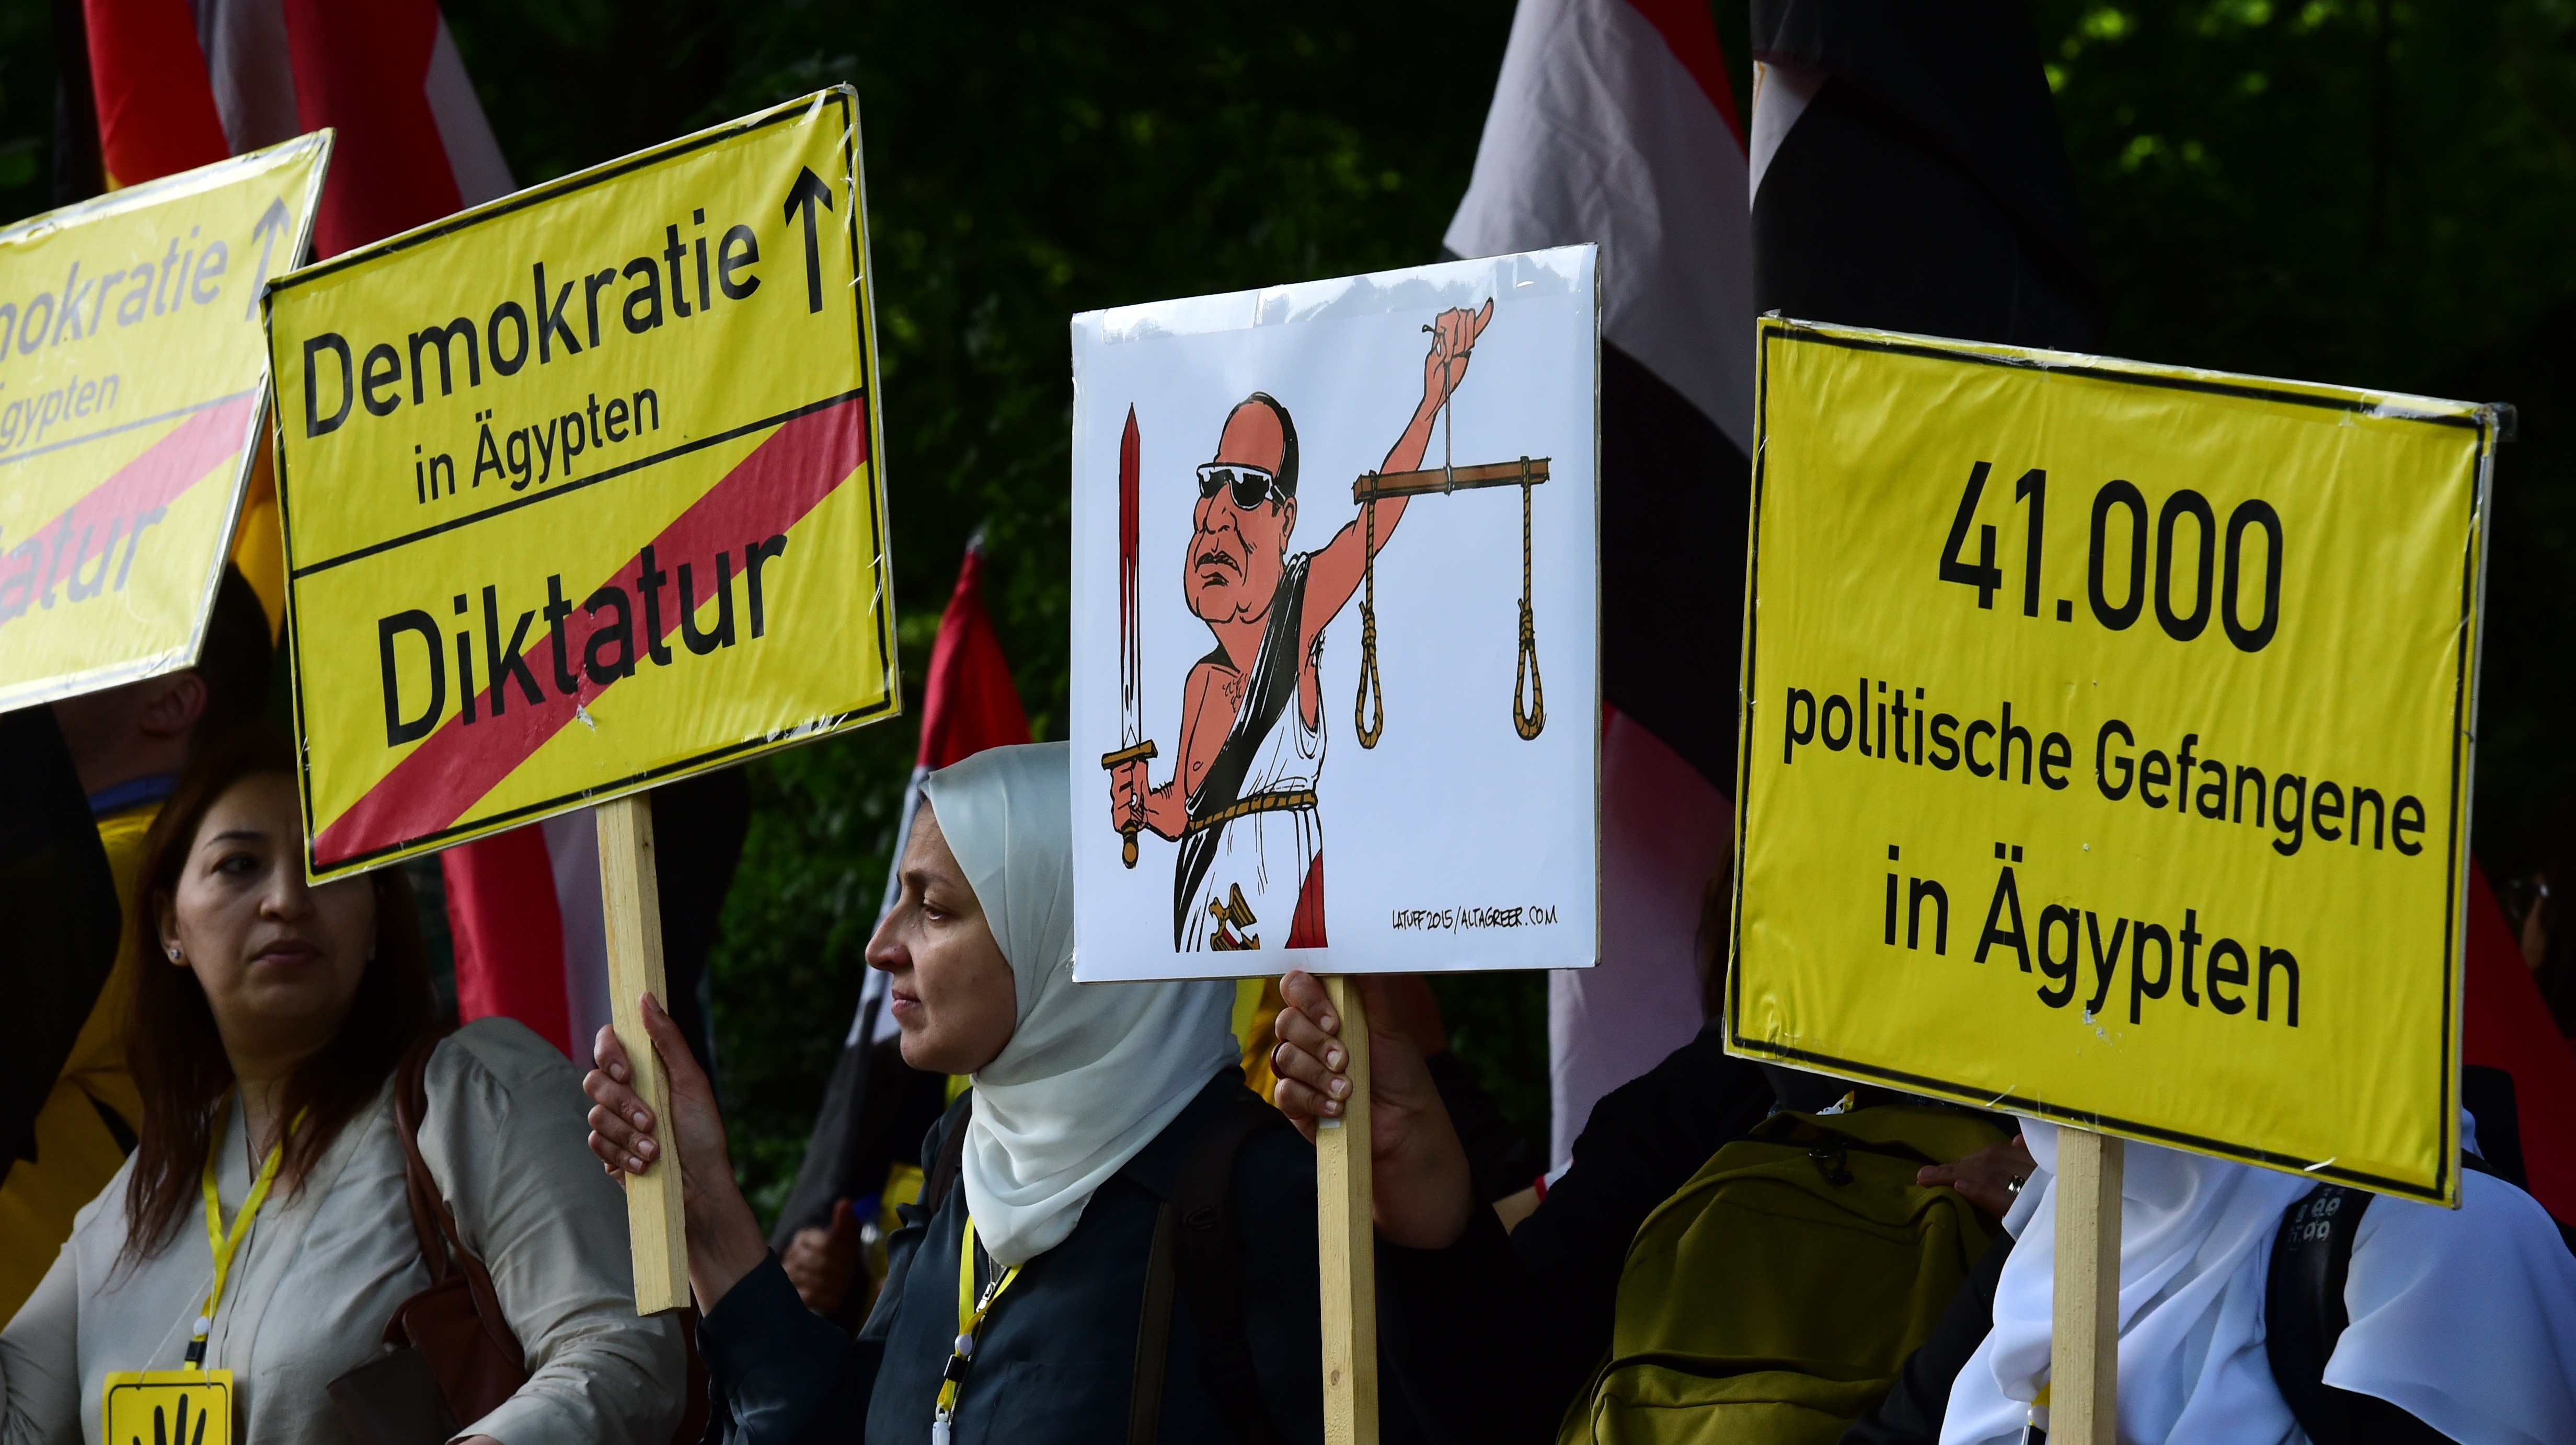 Des manifestants tiennent des banderoles portant l’inscription « Démocratie en Égypte – Dictature » avant l’arrivée de Sissi pour une réunion avec le président allemand à Berlin en 2015 (AFP)